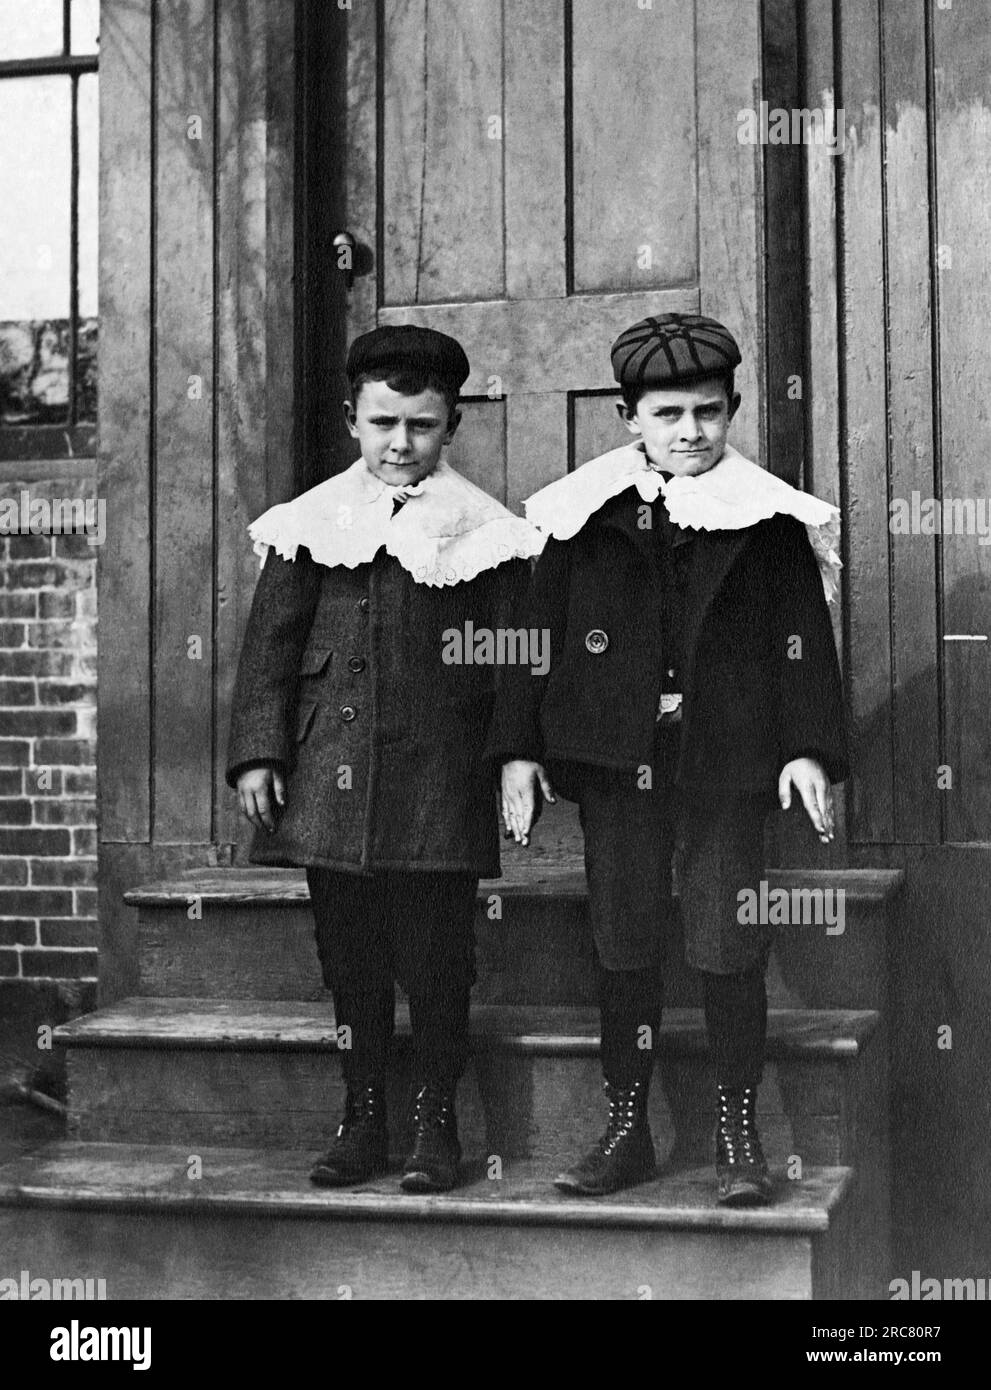 États-Unis : c. 1900 deux jeunes garçons à l'air dur habillés dans leur meilleur dimanche avec des chapeaux et des cols à volants posent sur une porte. Banque D'Images